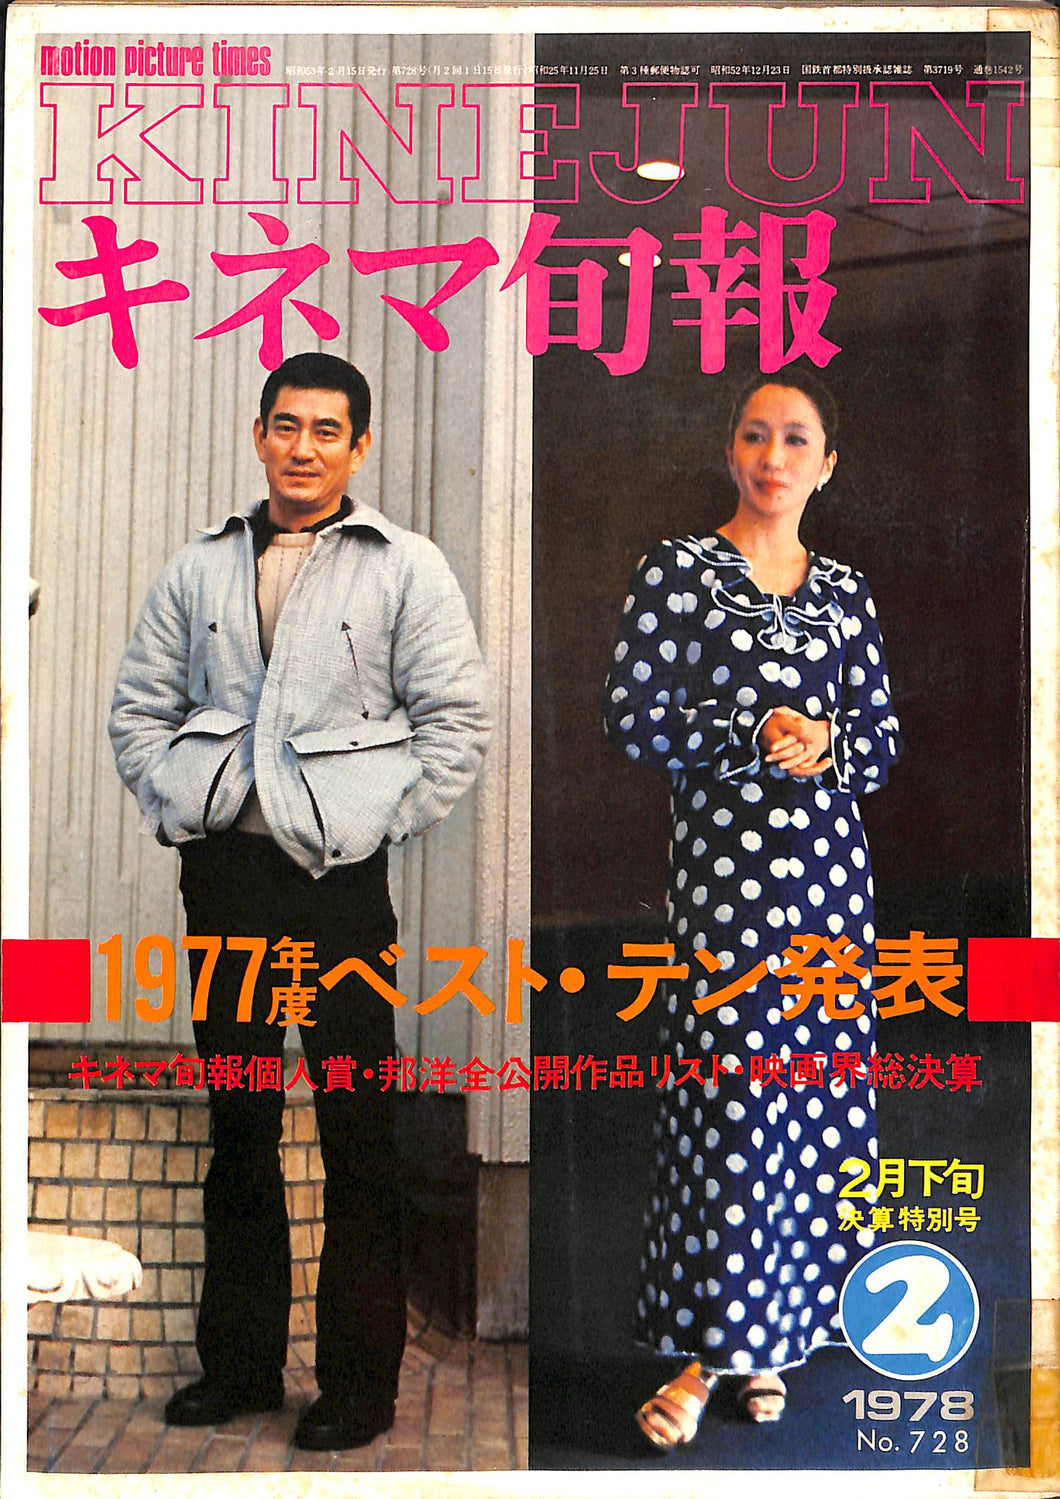 キネマ旬報 1978年2月 下旬号 表紙 : 高倉健 岩下志麻 1977年度ベスト・テン発表